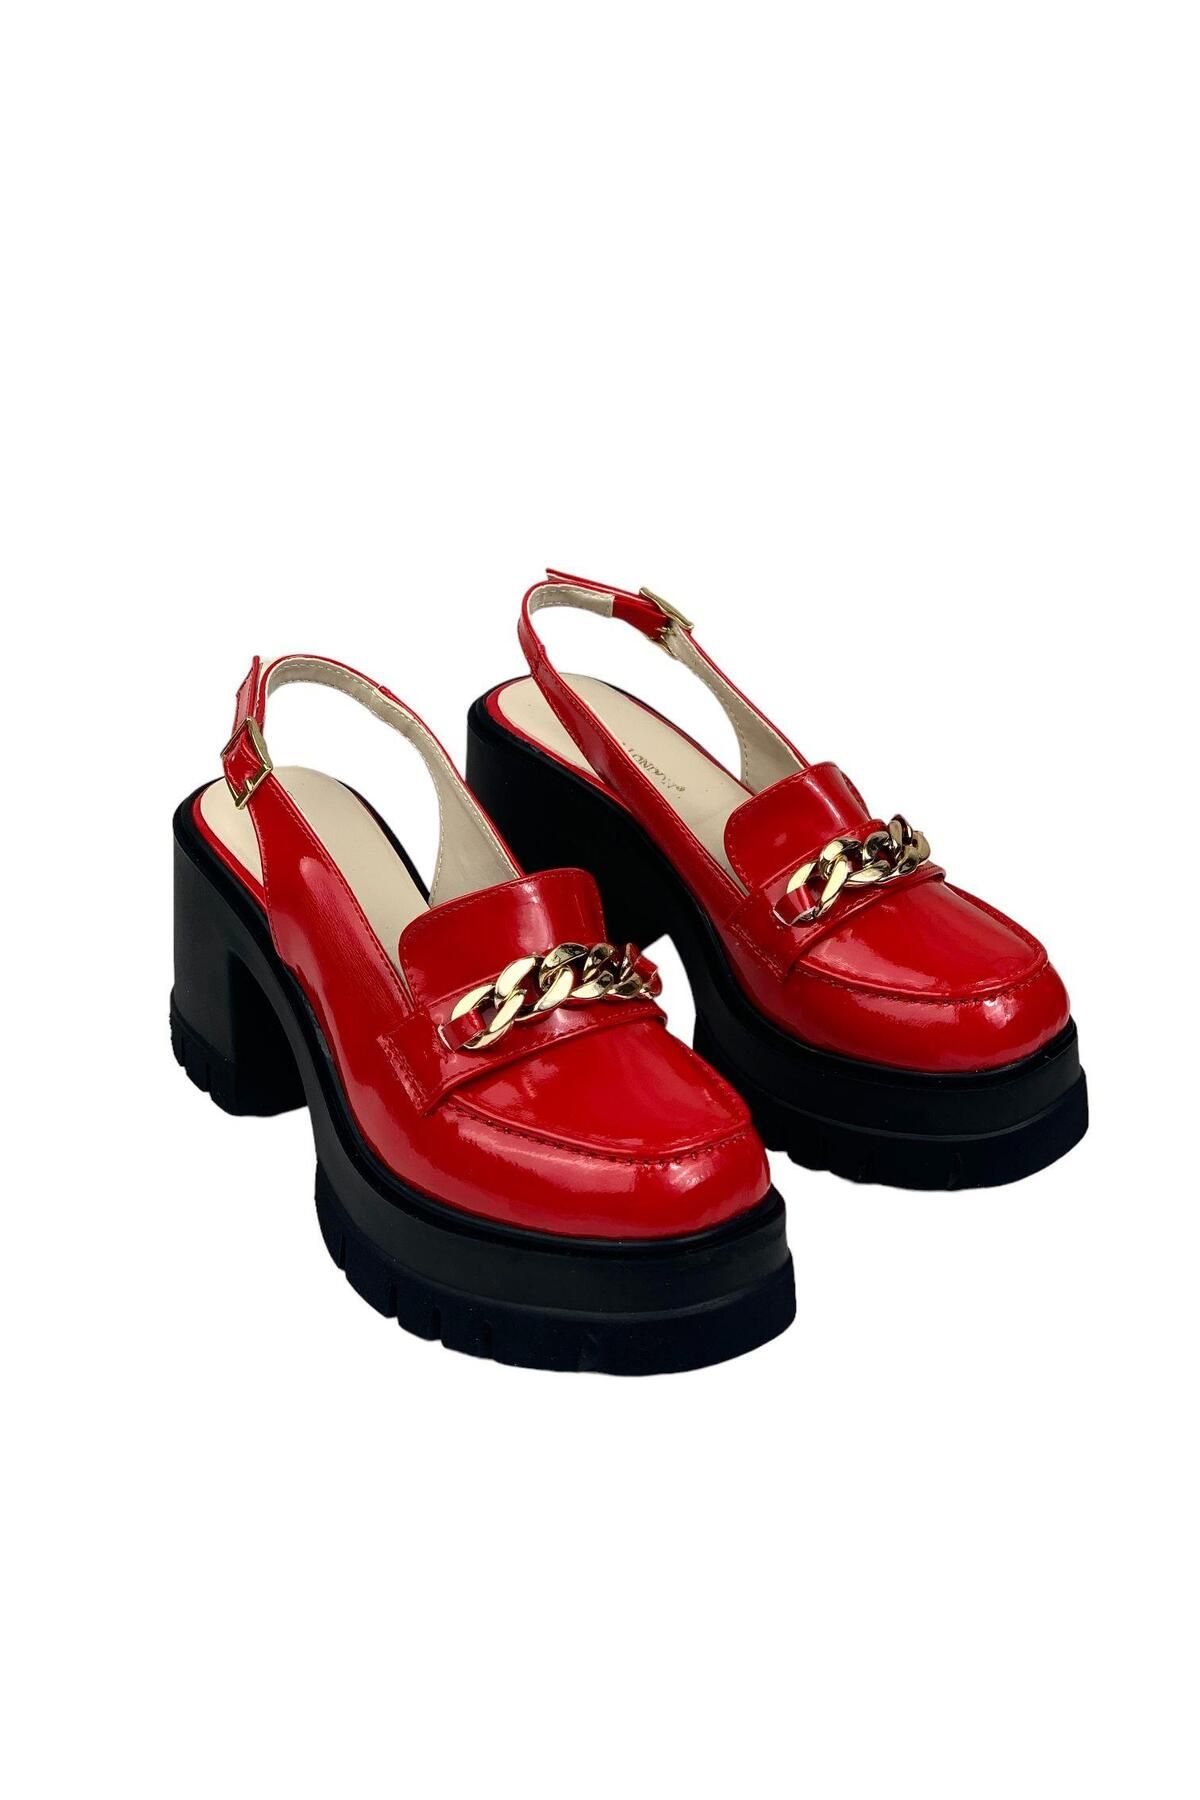 BASSKAN Kadın Hutya Kırmızı Rugan Arkası Açık Leofer Ayakkabı Zincir Tokalı 10 cm 650